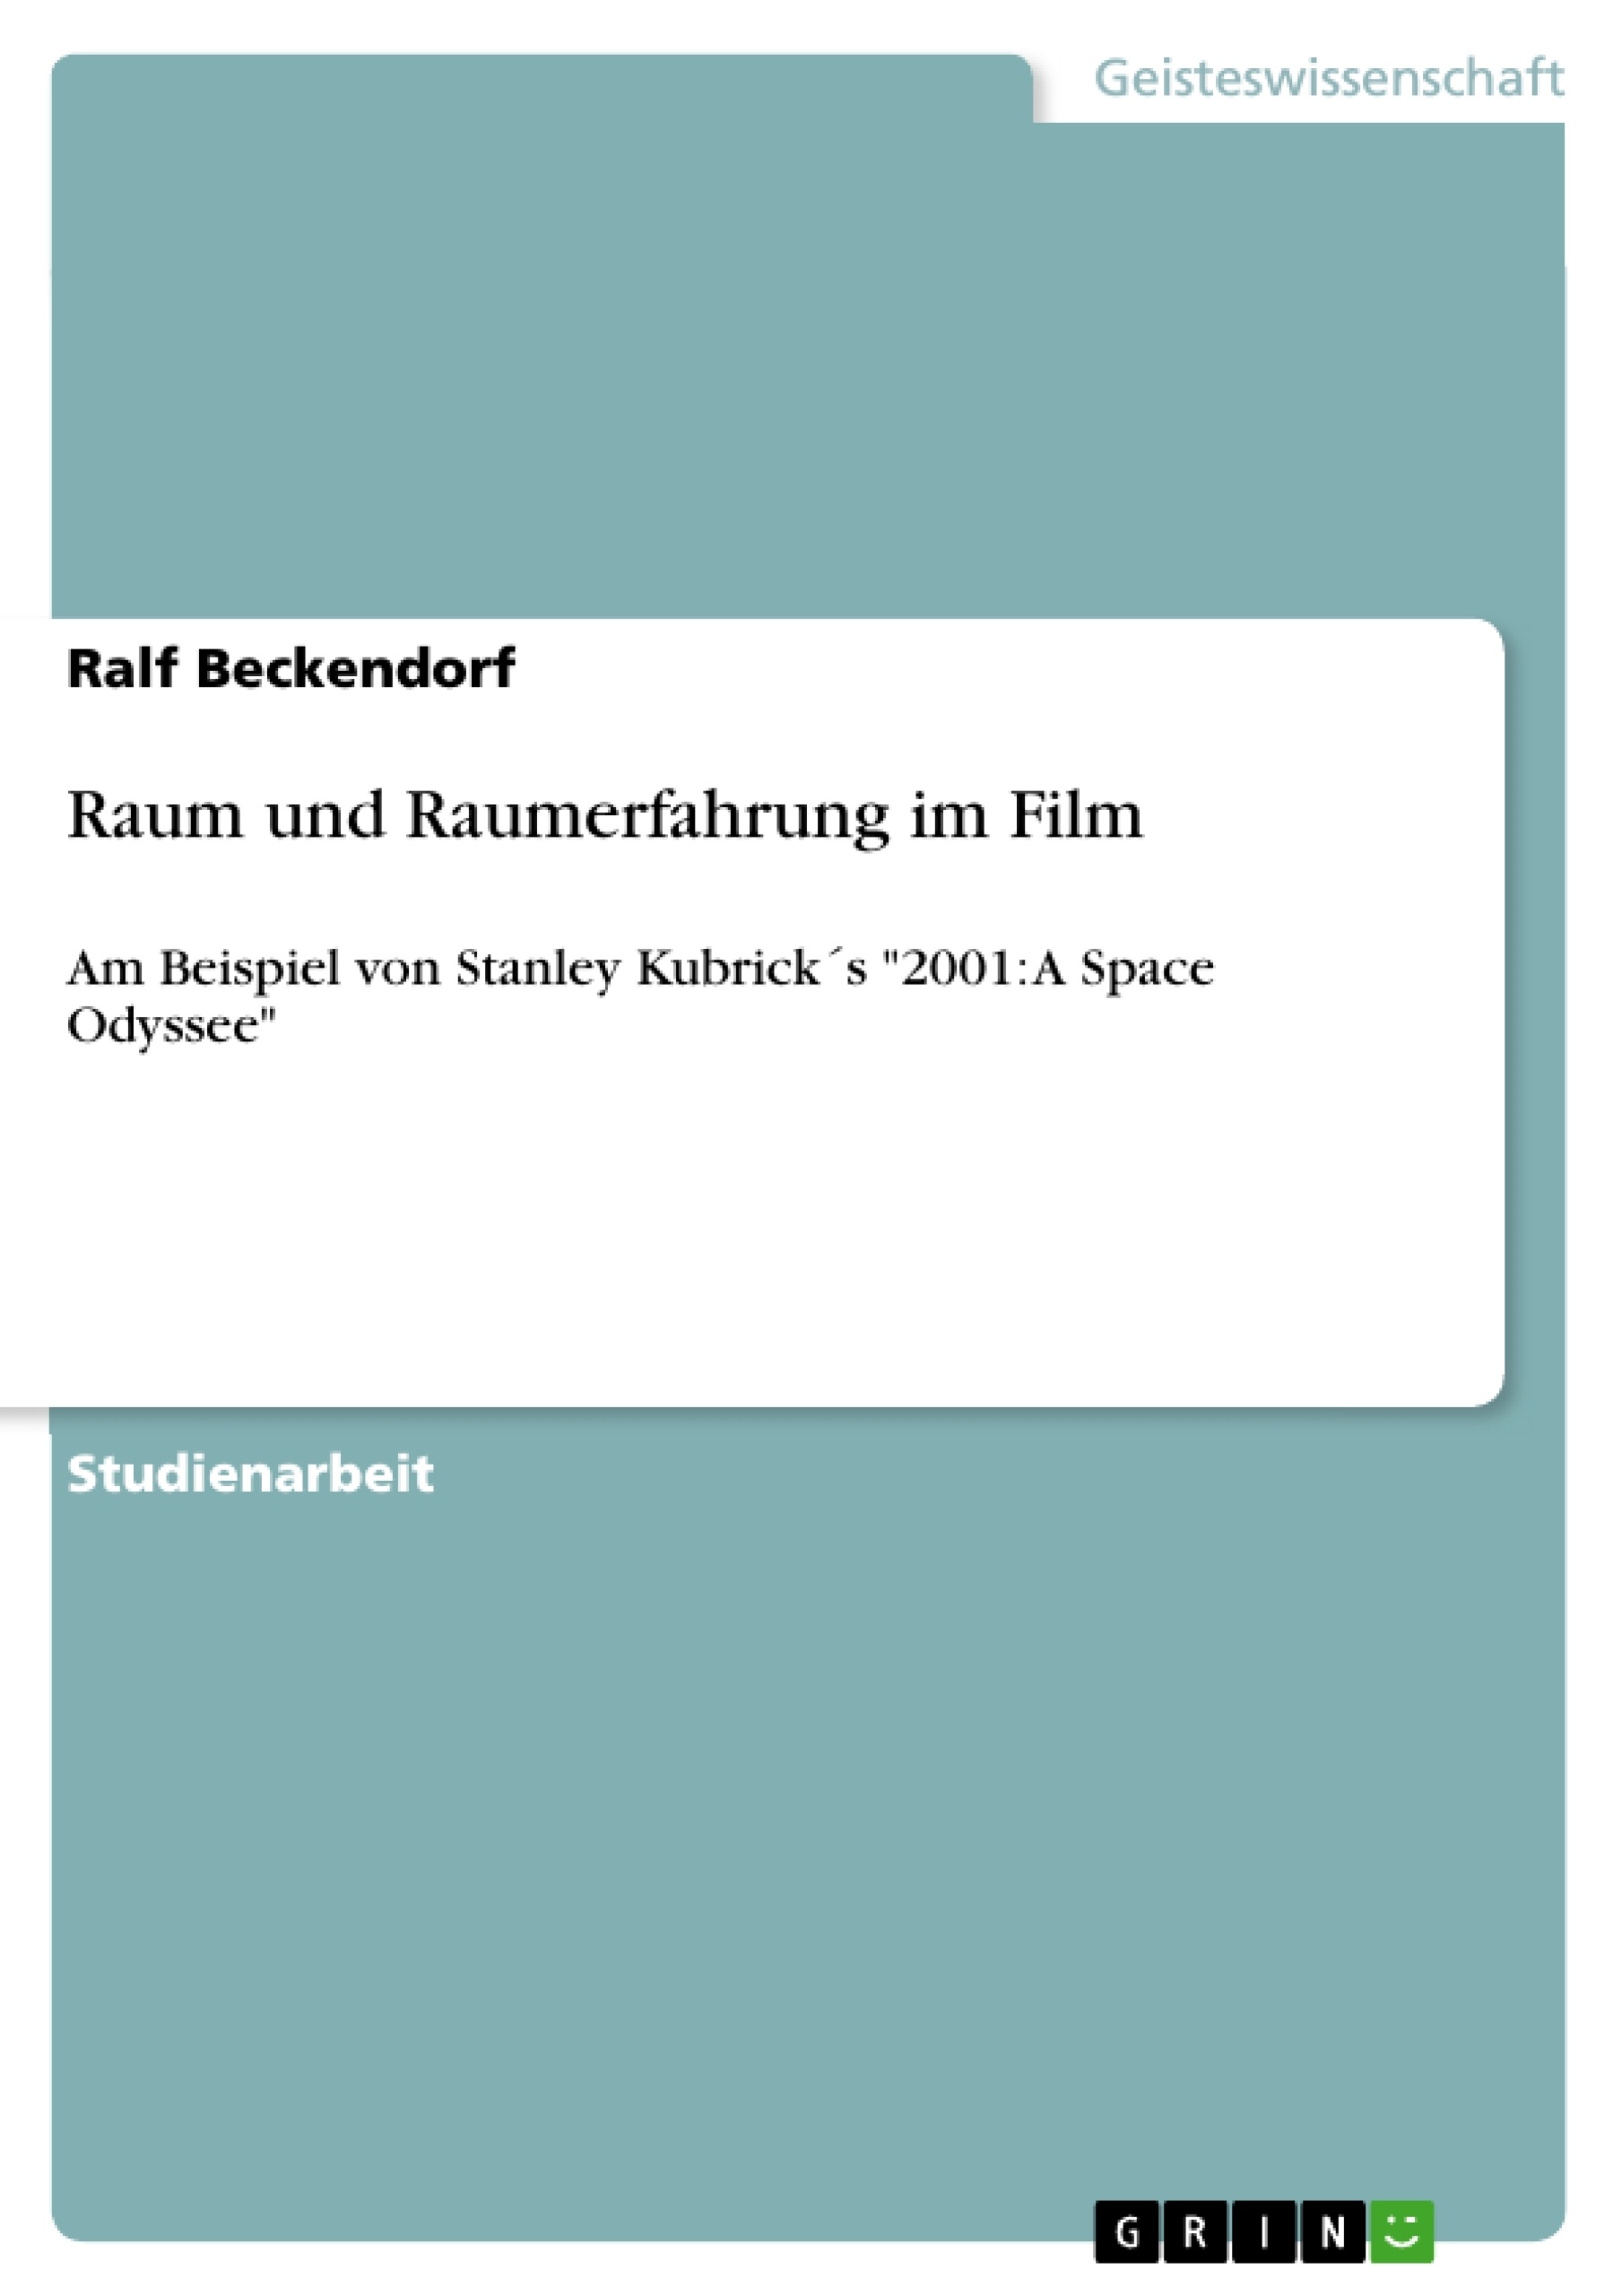 Título: Raum und Raumerfahrung im Film